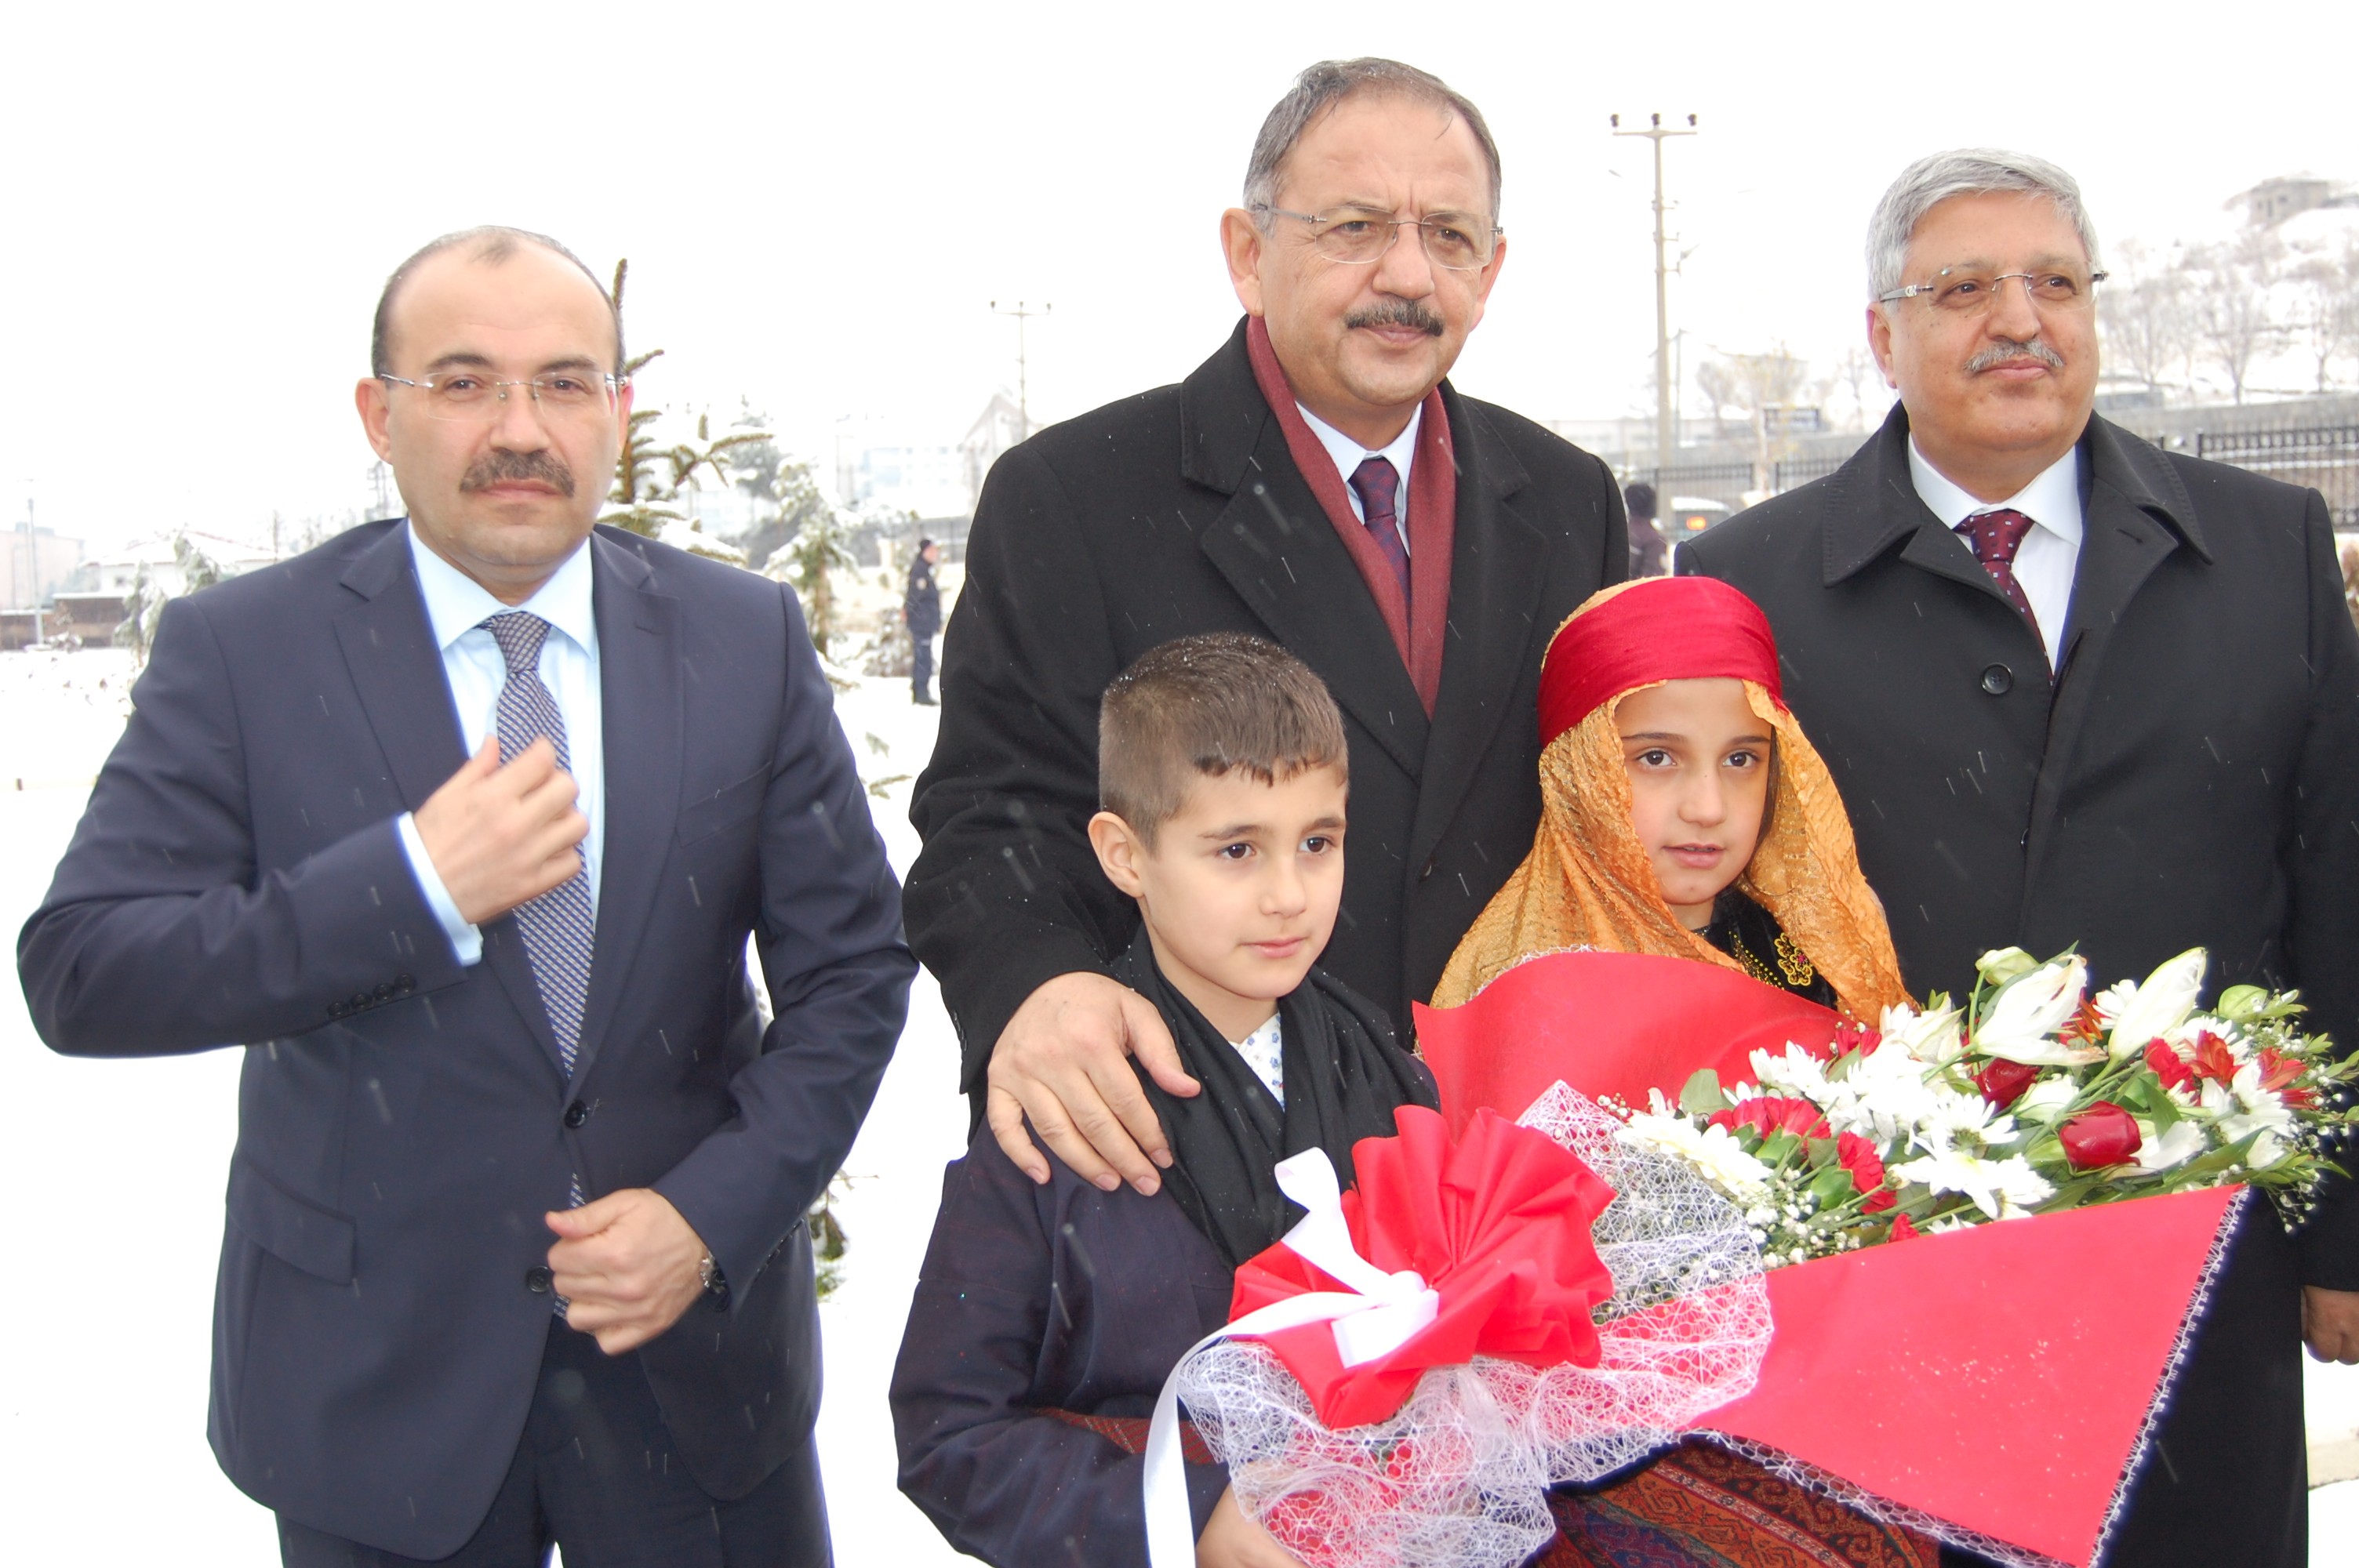 Çevre ve Şehircilik Bakanı Mehmet Özhaseki: “Dost köyüne bahanesiz gelinmezmiş”